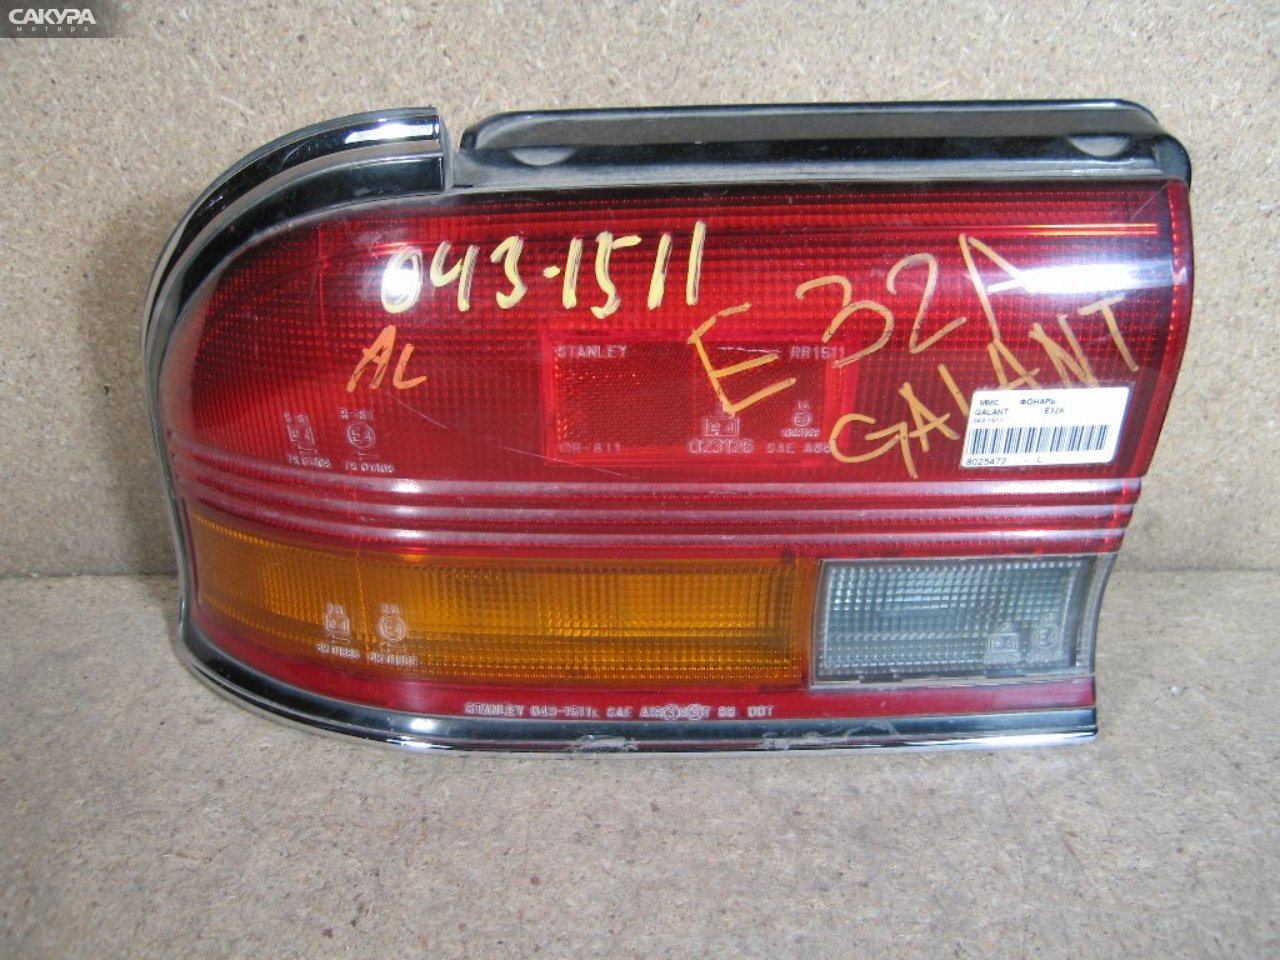 Фонарь стоп-сигнала левый Mitsubishi Galant E32A 043-1511: купить в Сакура Абакан.